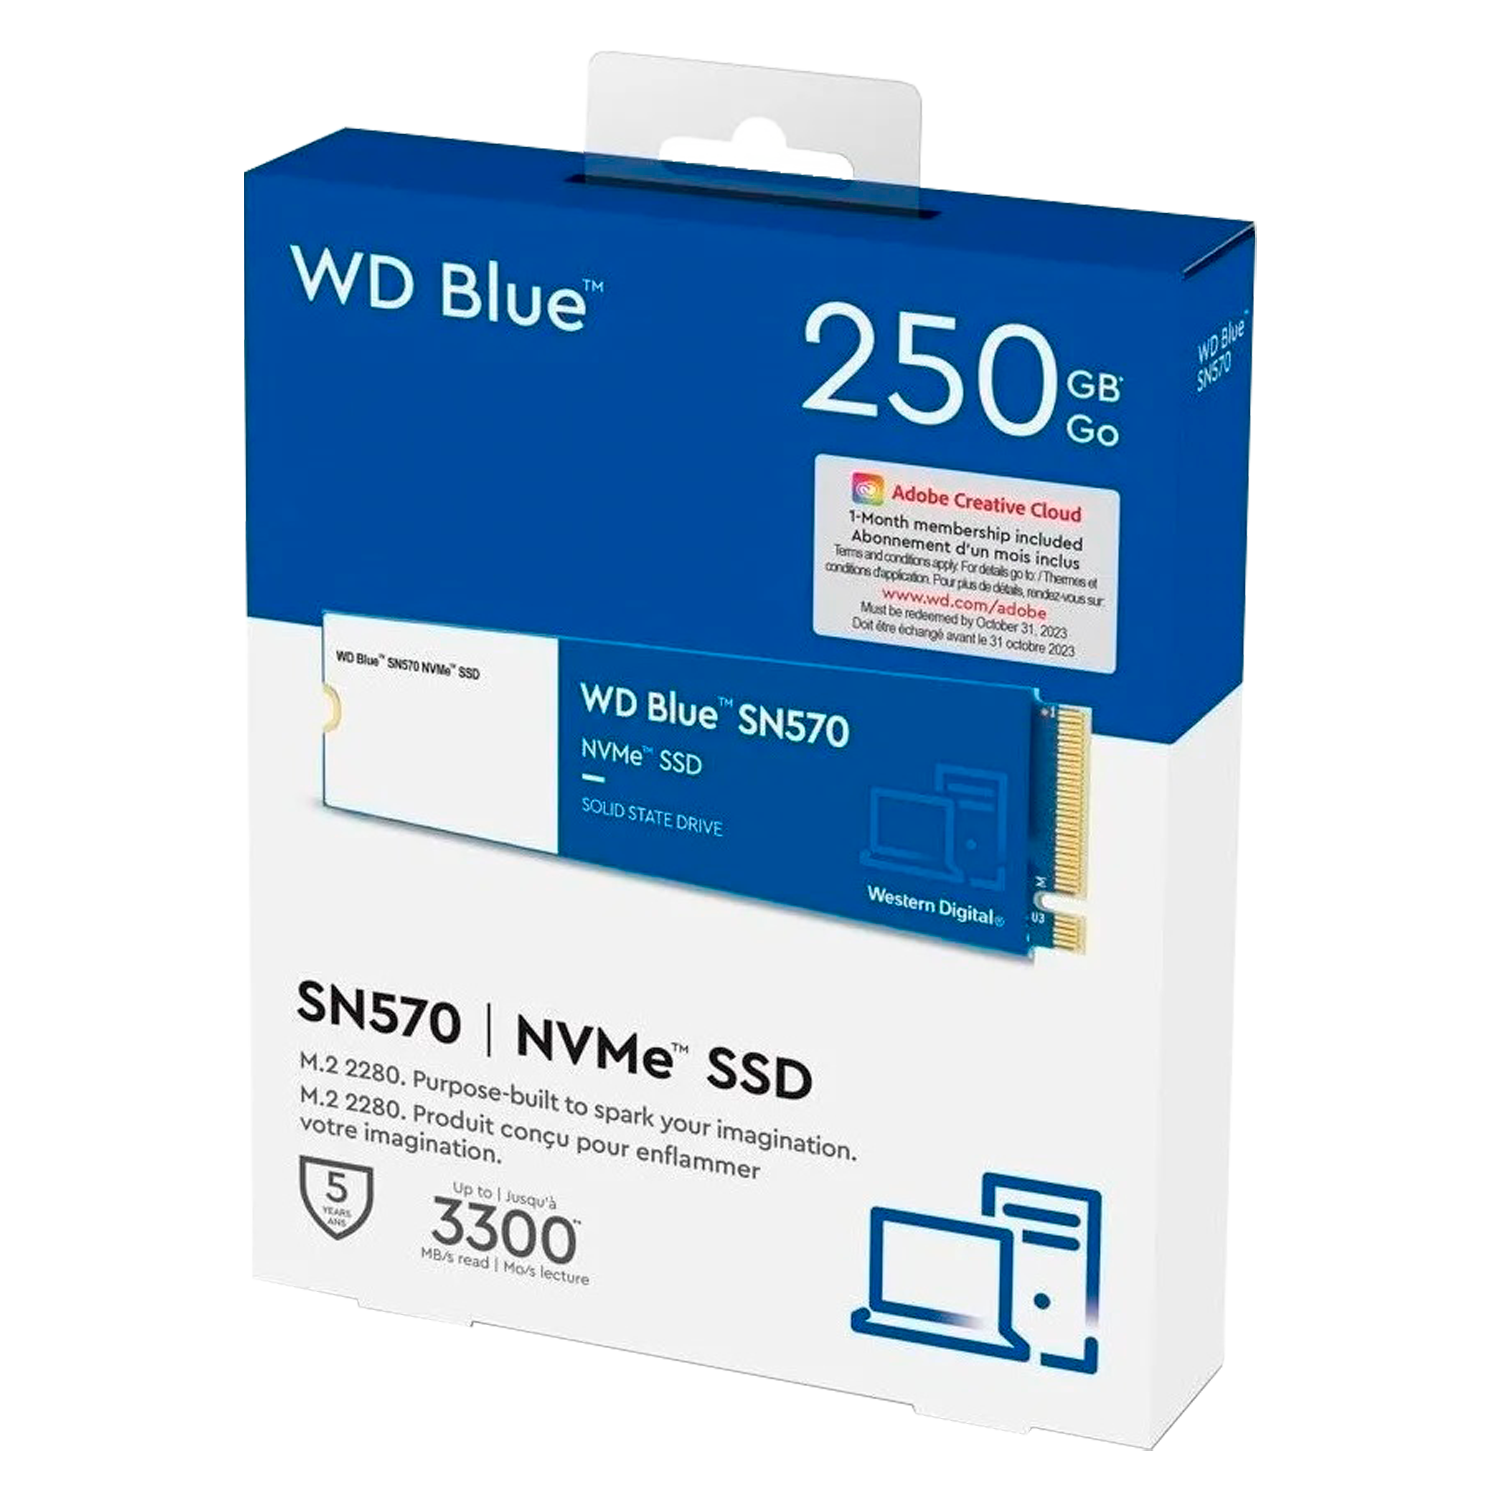 SSD M.2 Western Digital SN570 Blue 250GB NVMe PCIe - WDS250G3B0C